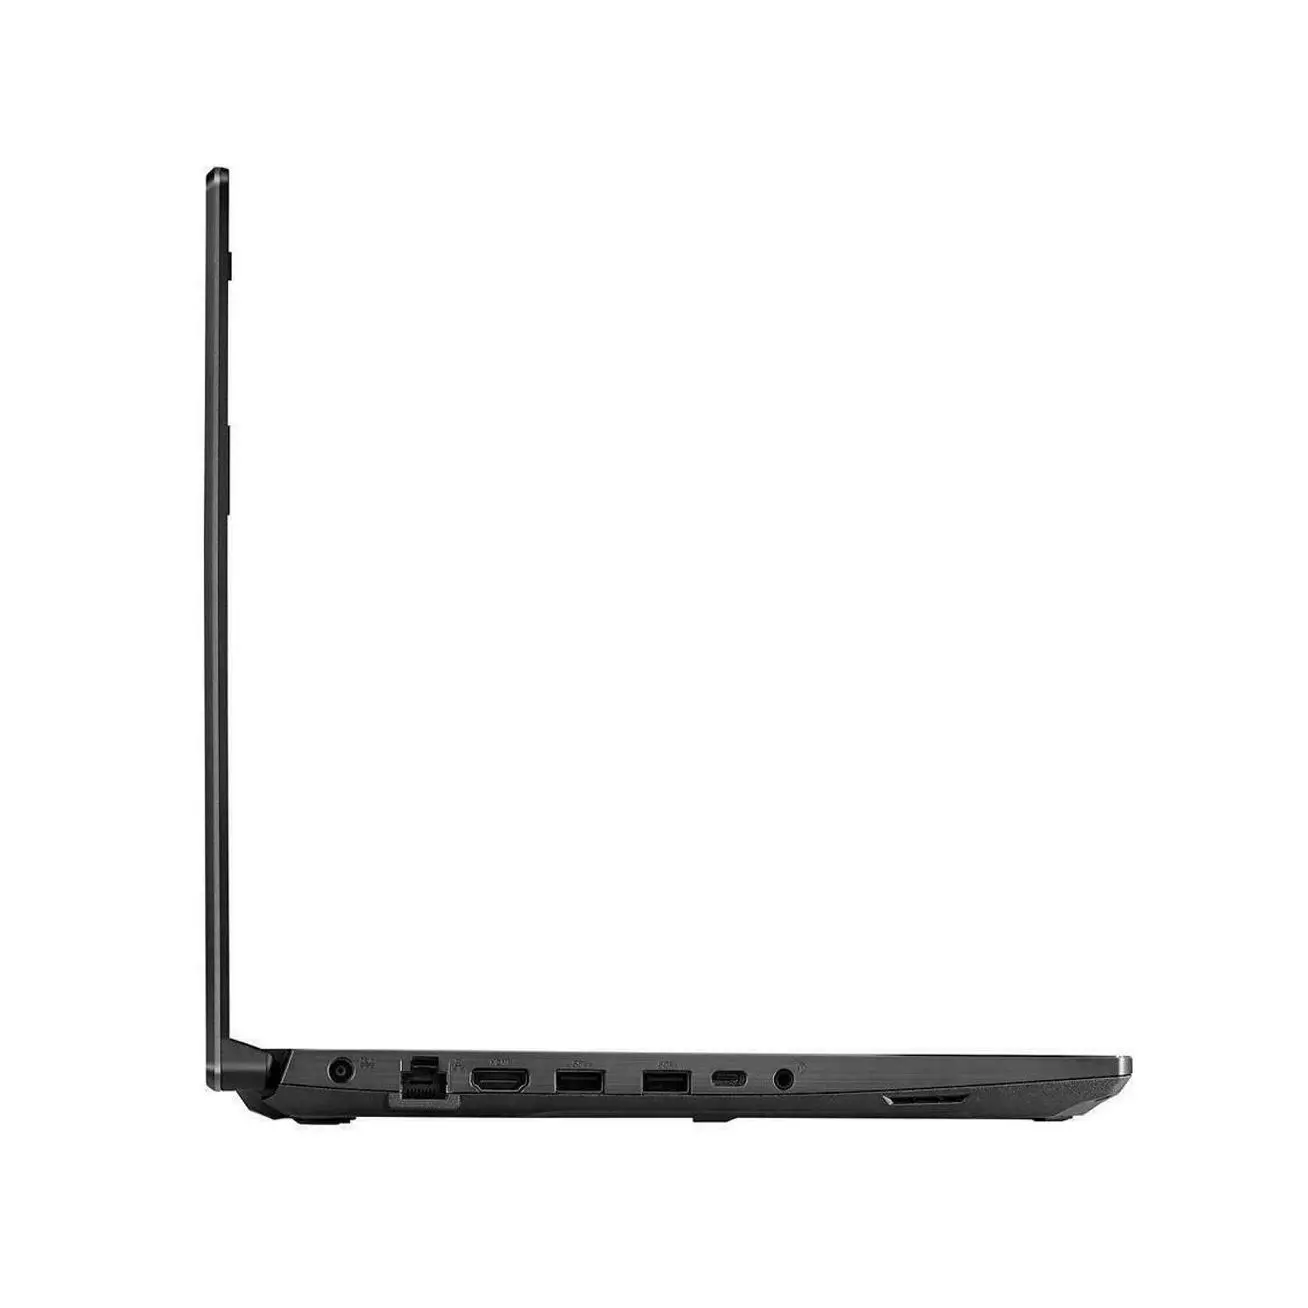 Asus TUF Gaming A15 Gaming Laptop, Ryzen 7-4800H, 15.6 Inch 144HZ, 16GB, 512GB Nvme, RTX3050, Windows 10 Gaming 7